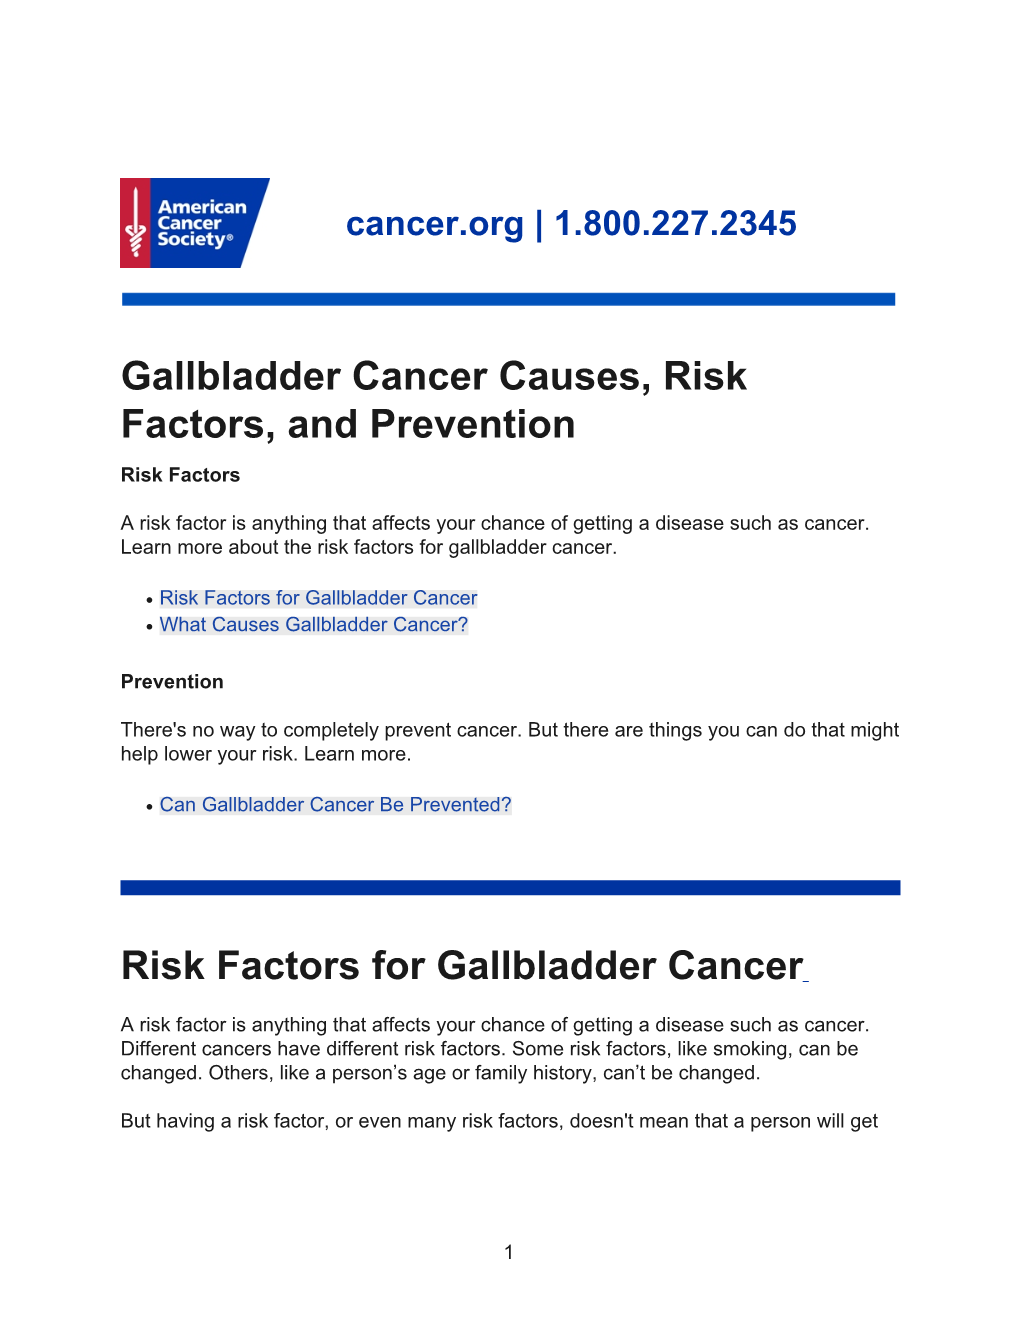 Gallbladder Cancer Causes, Risk Factors, and Prevention Risk Factors